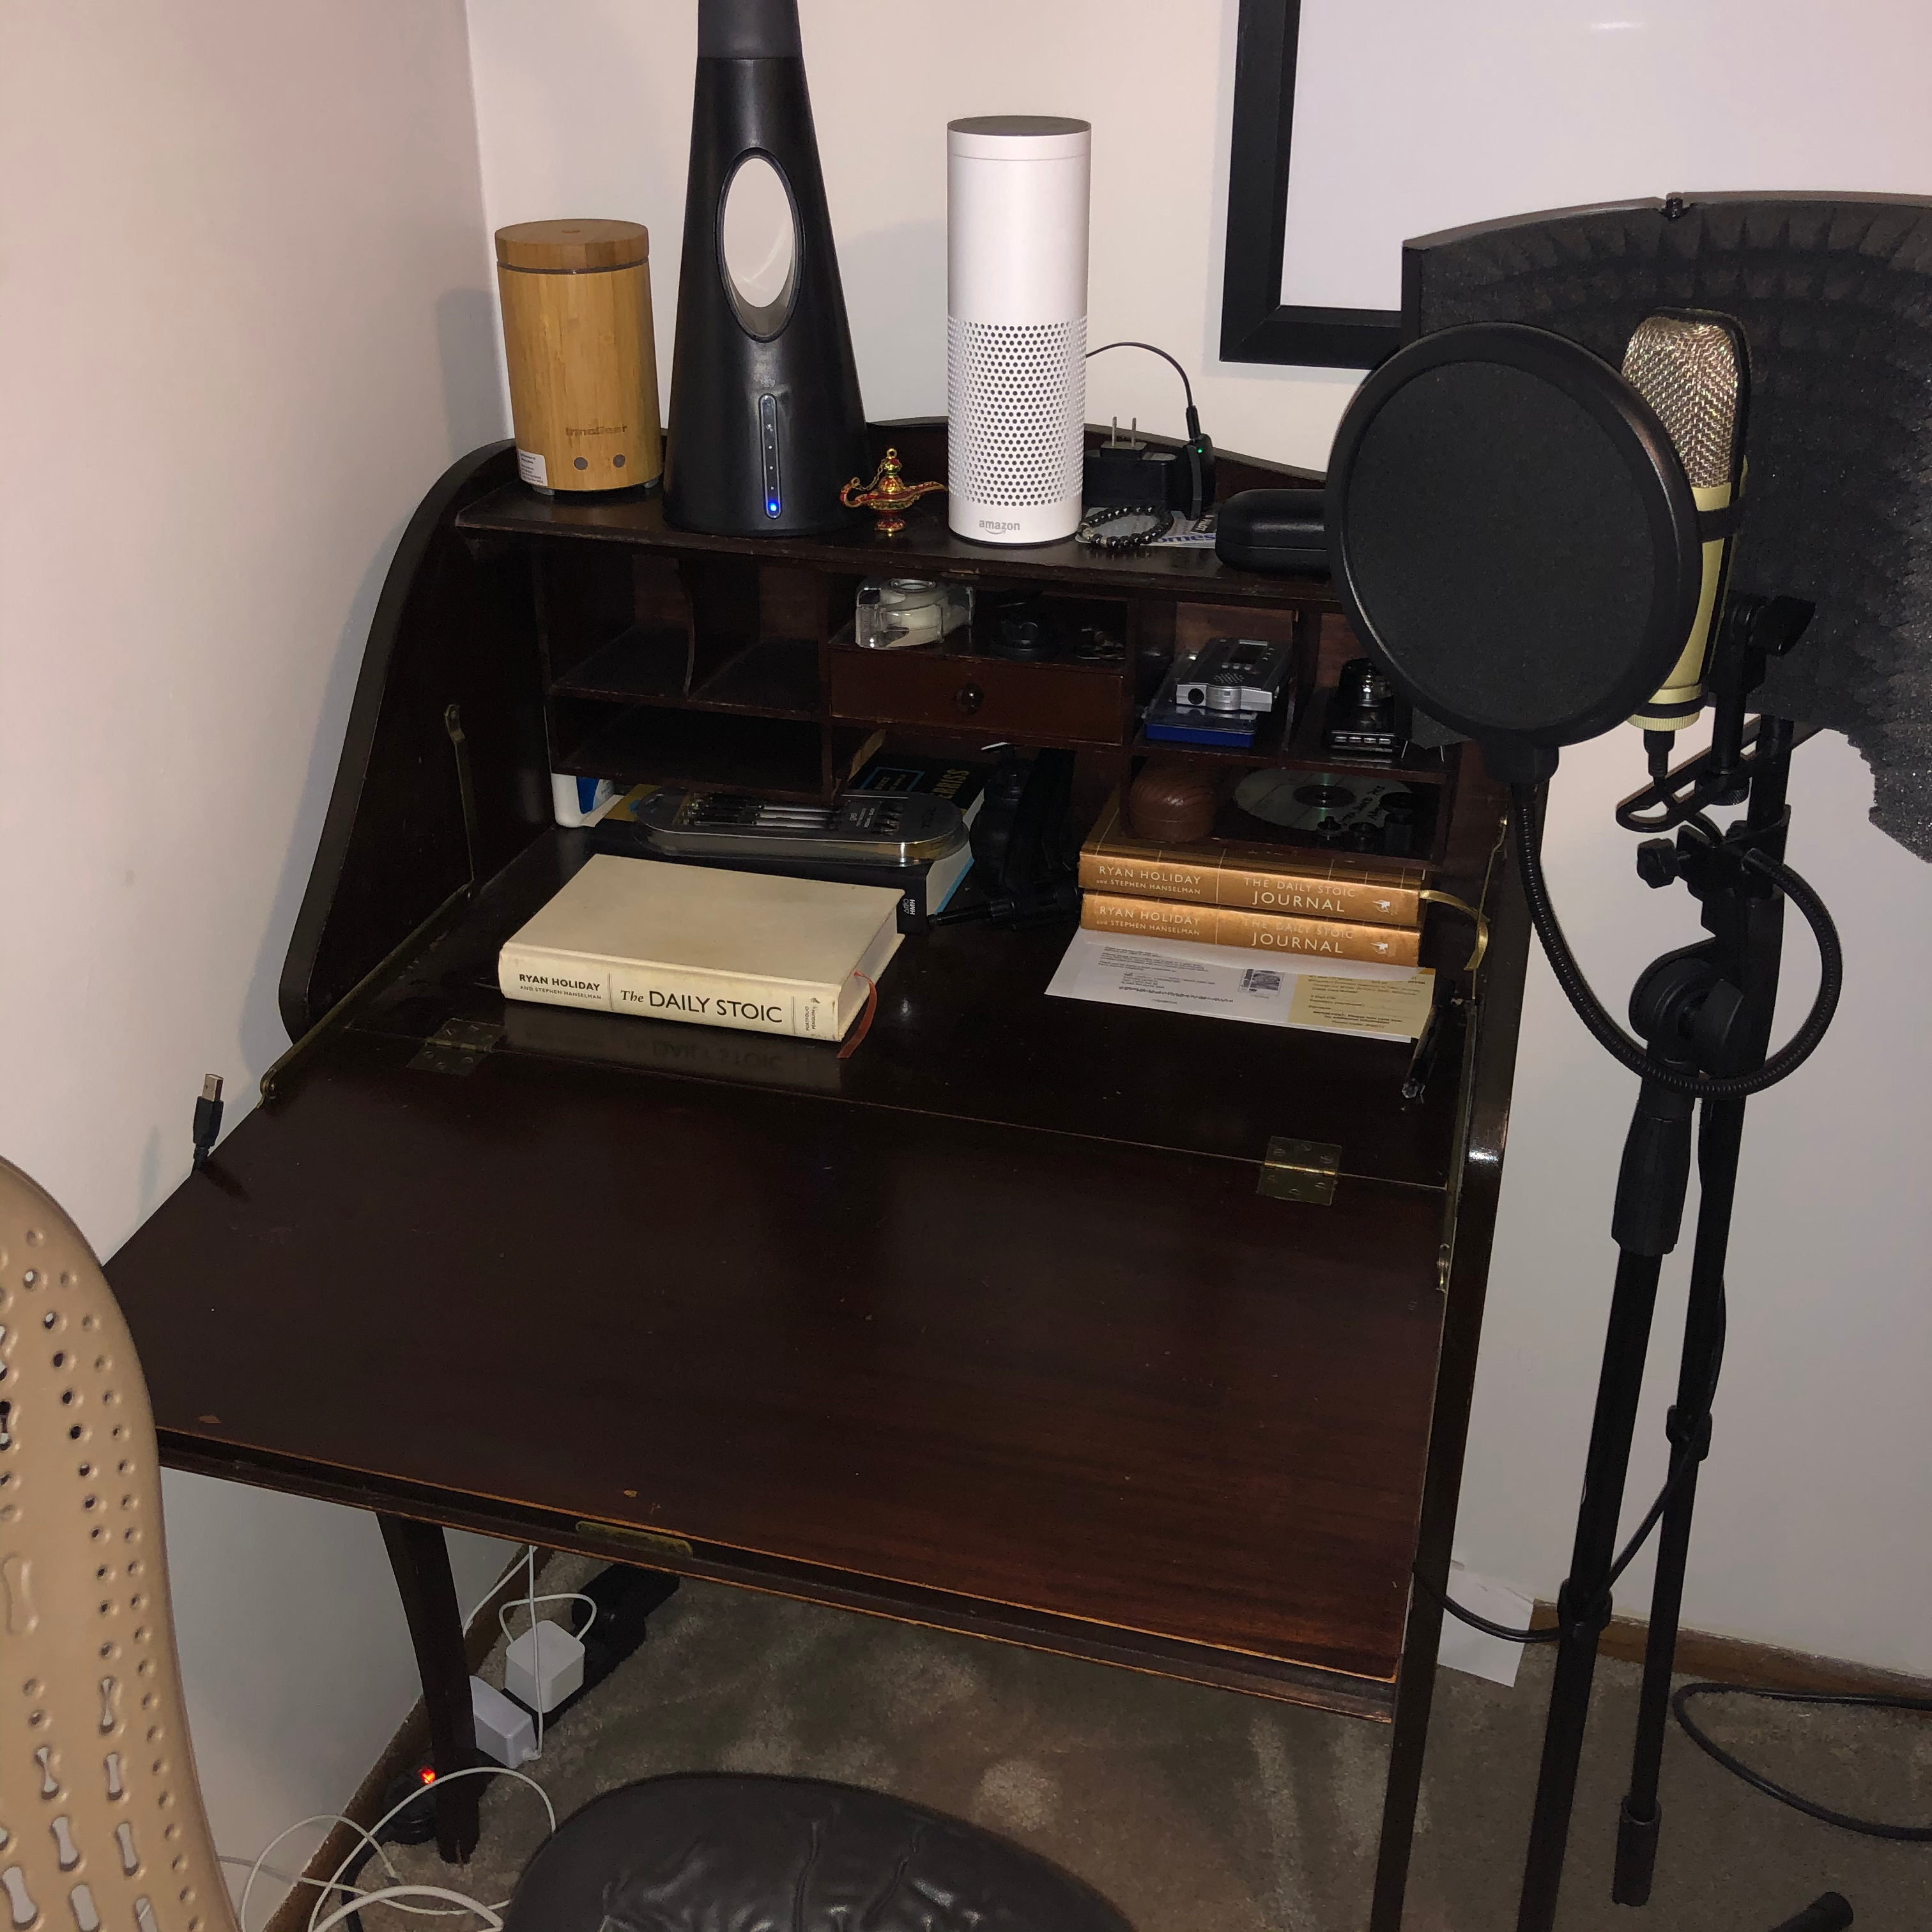 Steve's antique writing desk